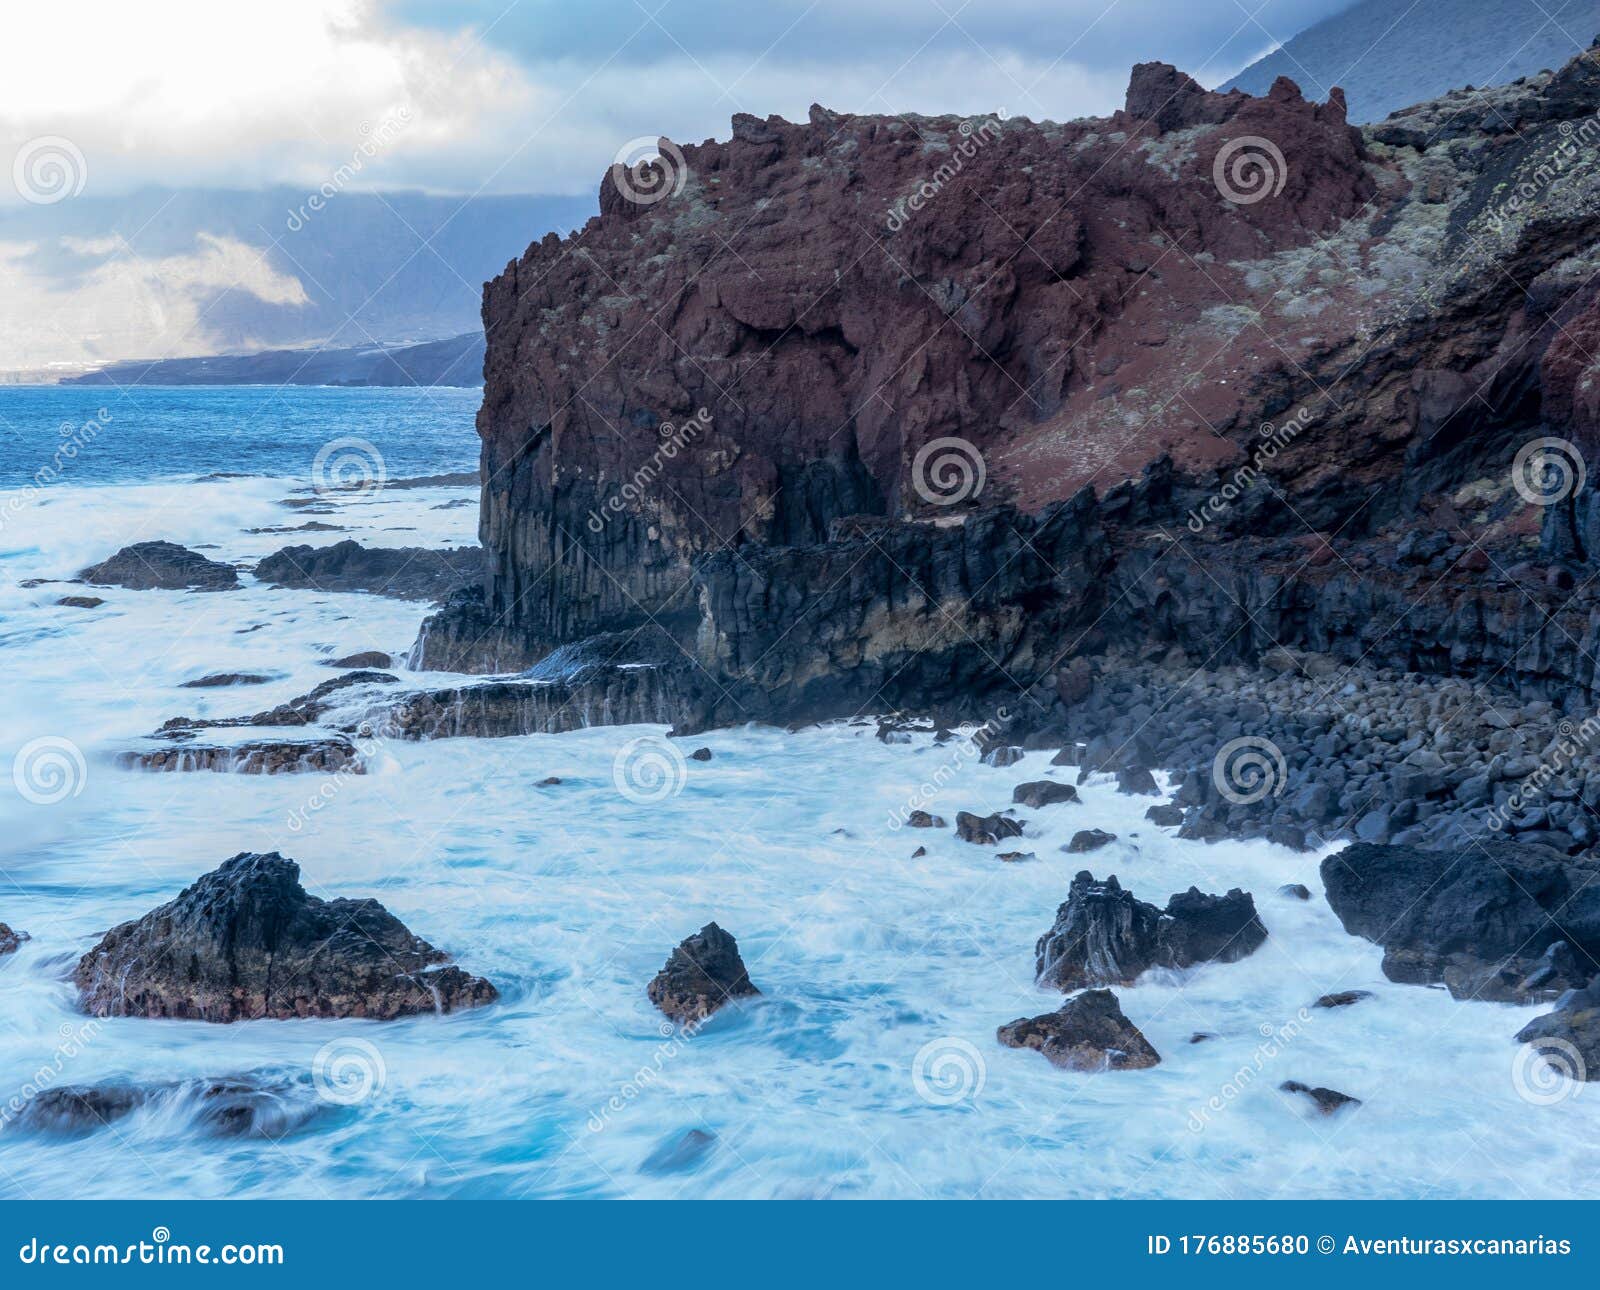 photo of the sea taken in the pozo de la salud.